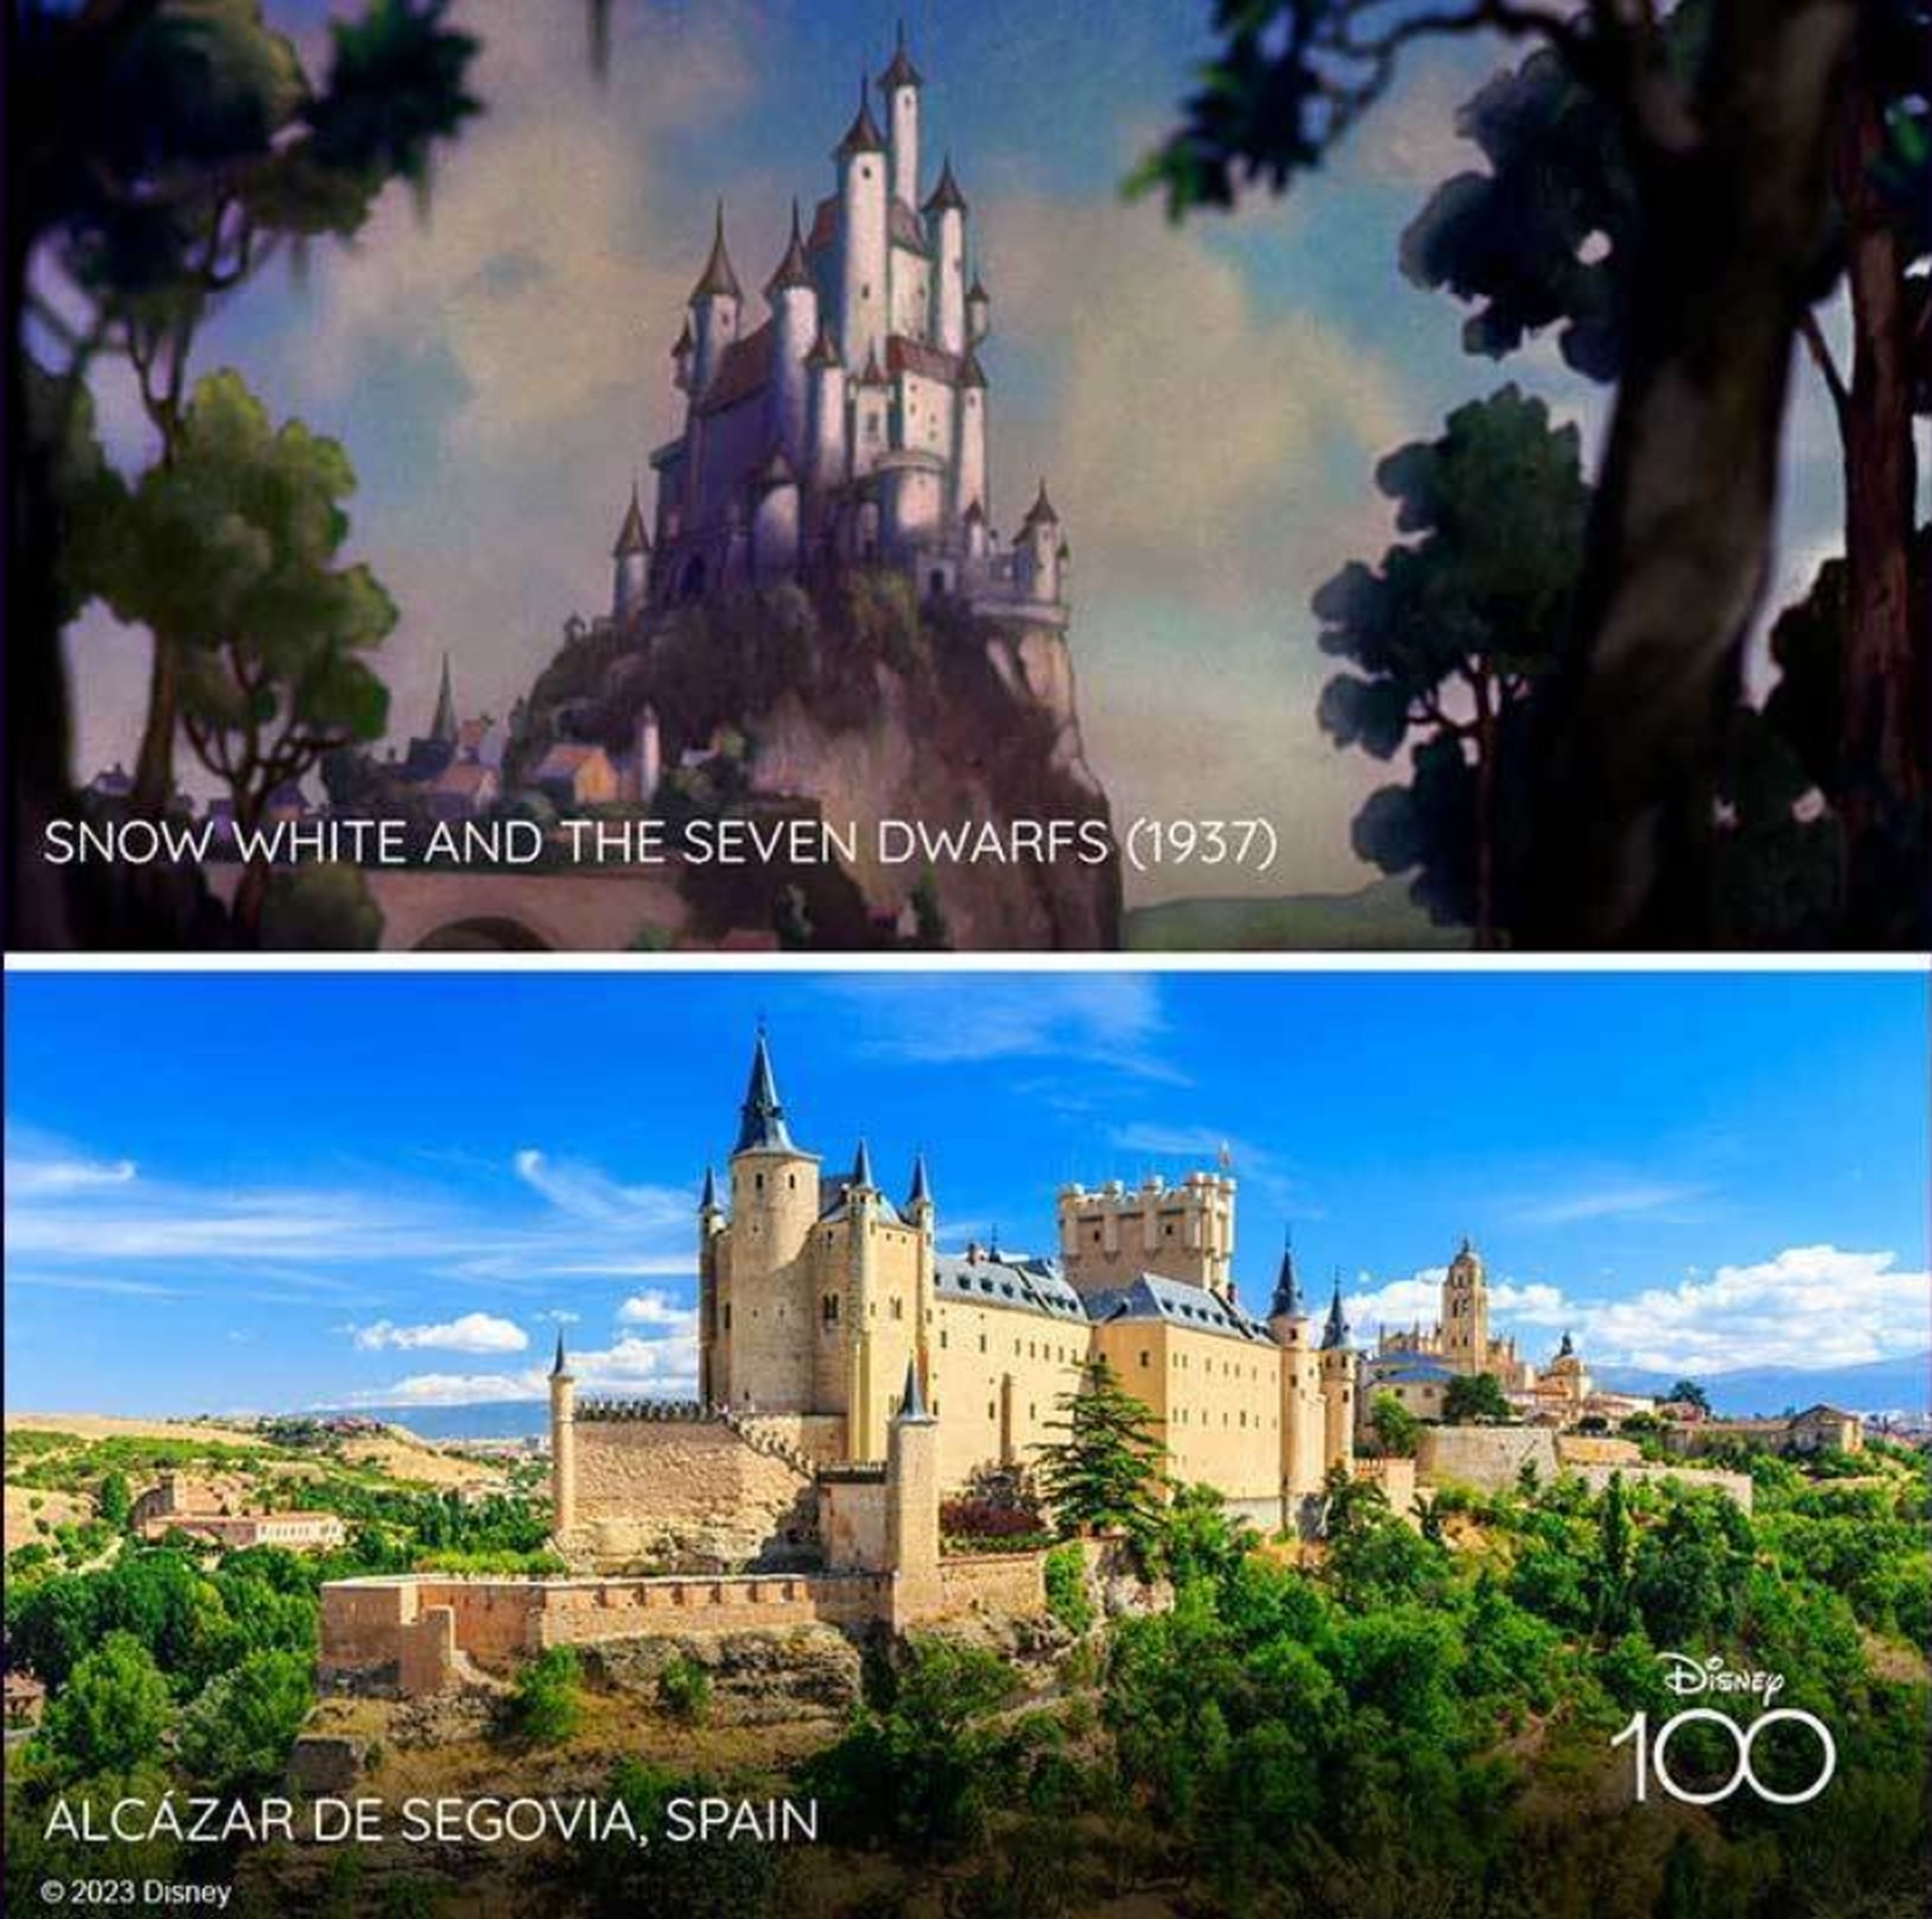 Disney al fin confirma que su castillo más famoso está inspirado en el Alcázar de Segovia